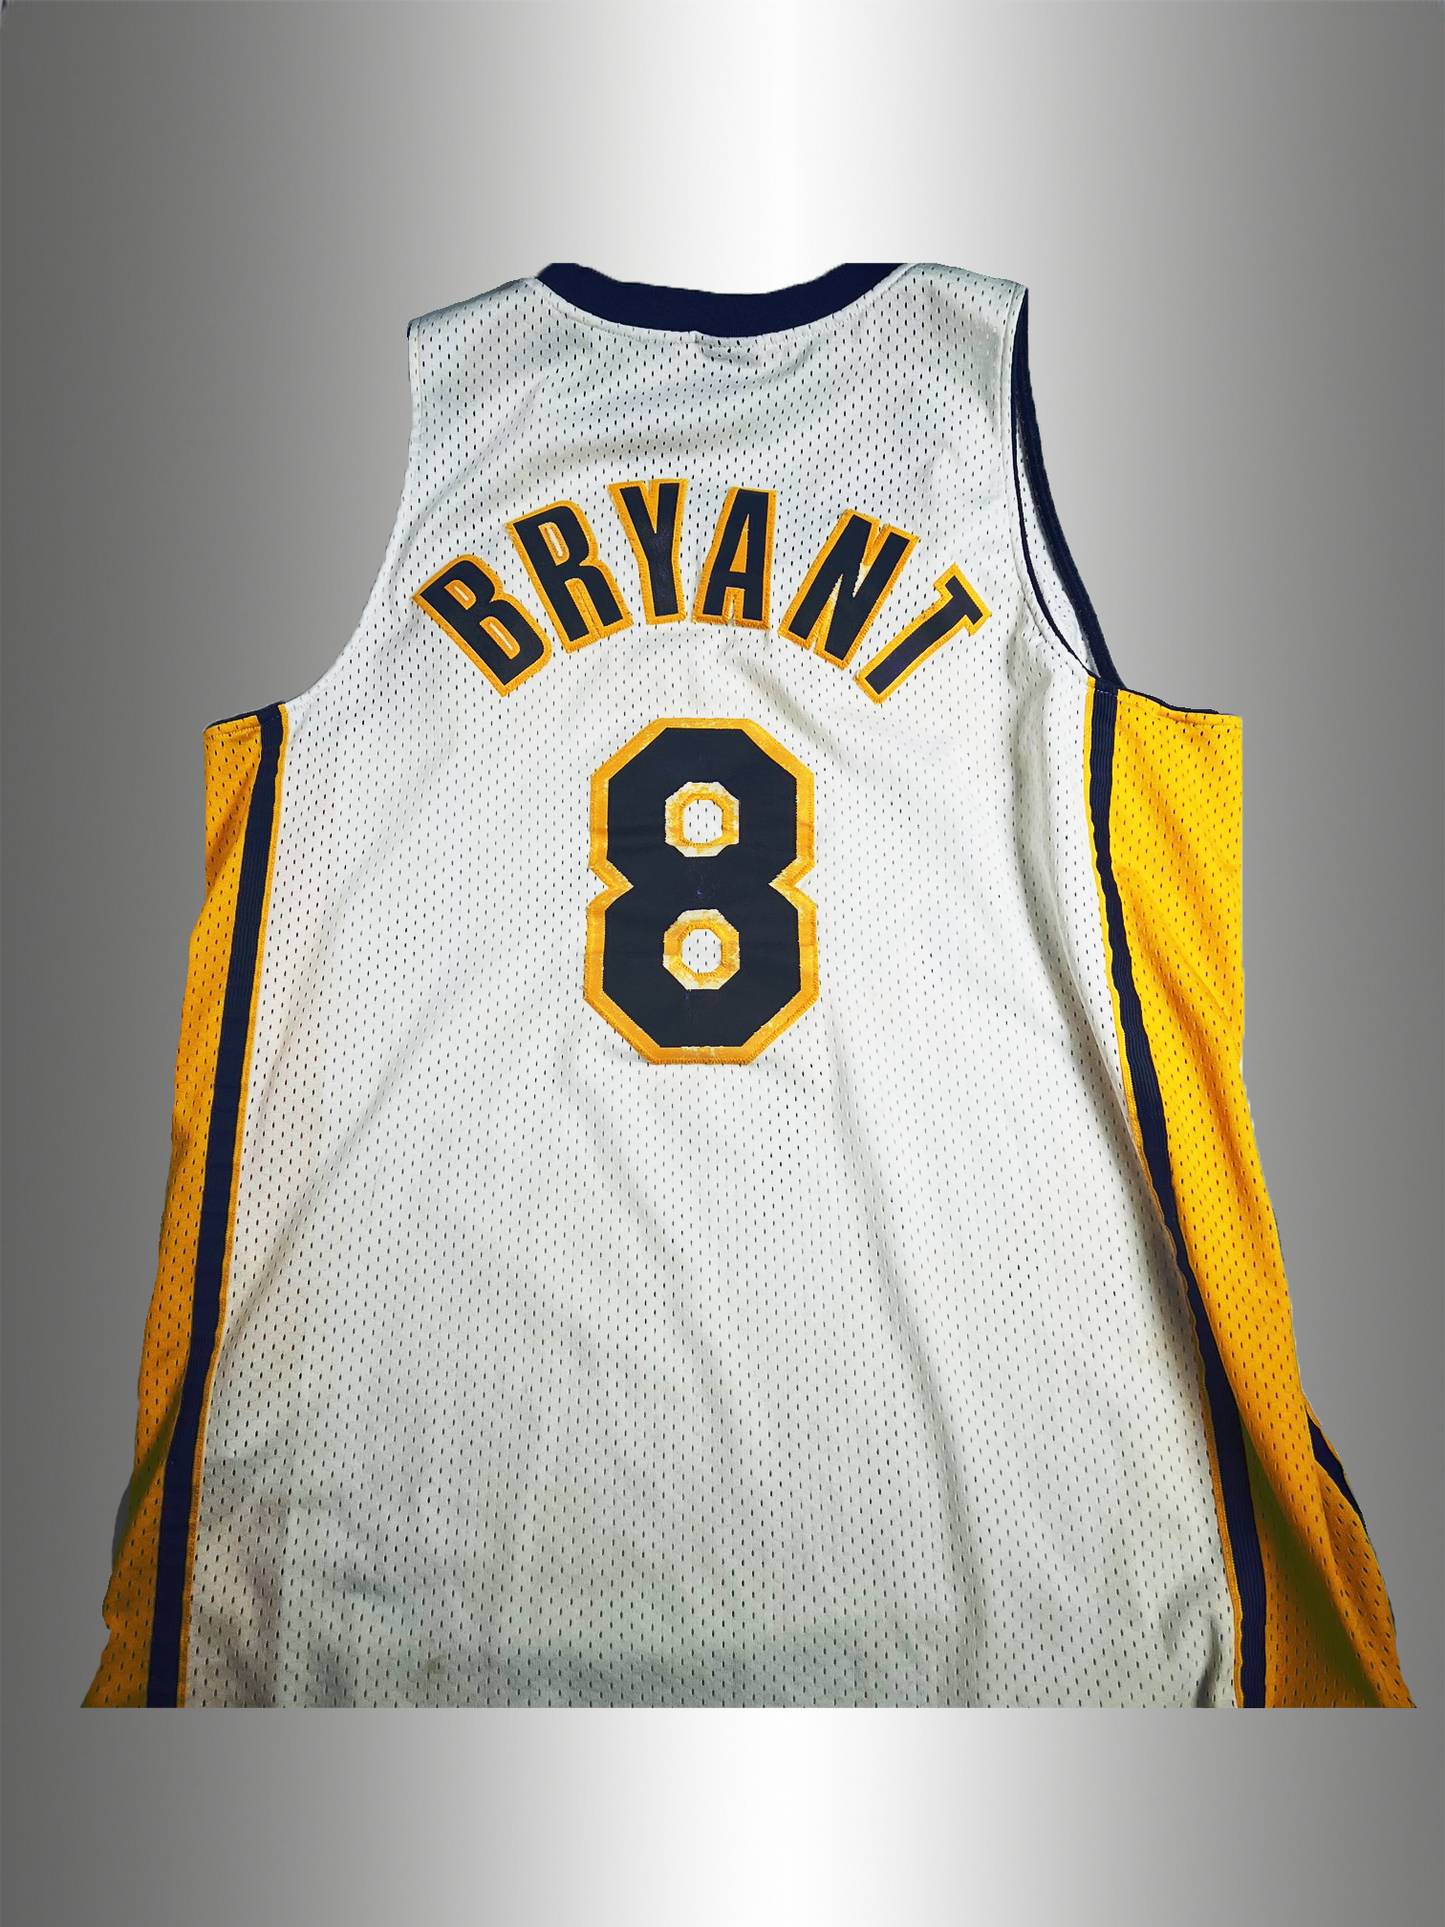 Nike NBA Kobe Bryant LA Lakers #23 Jersey Size L.  Length+2